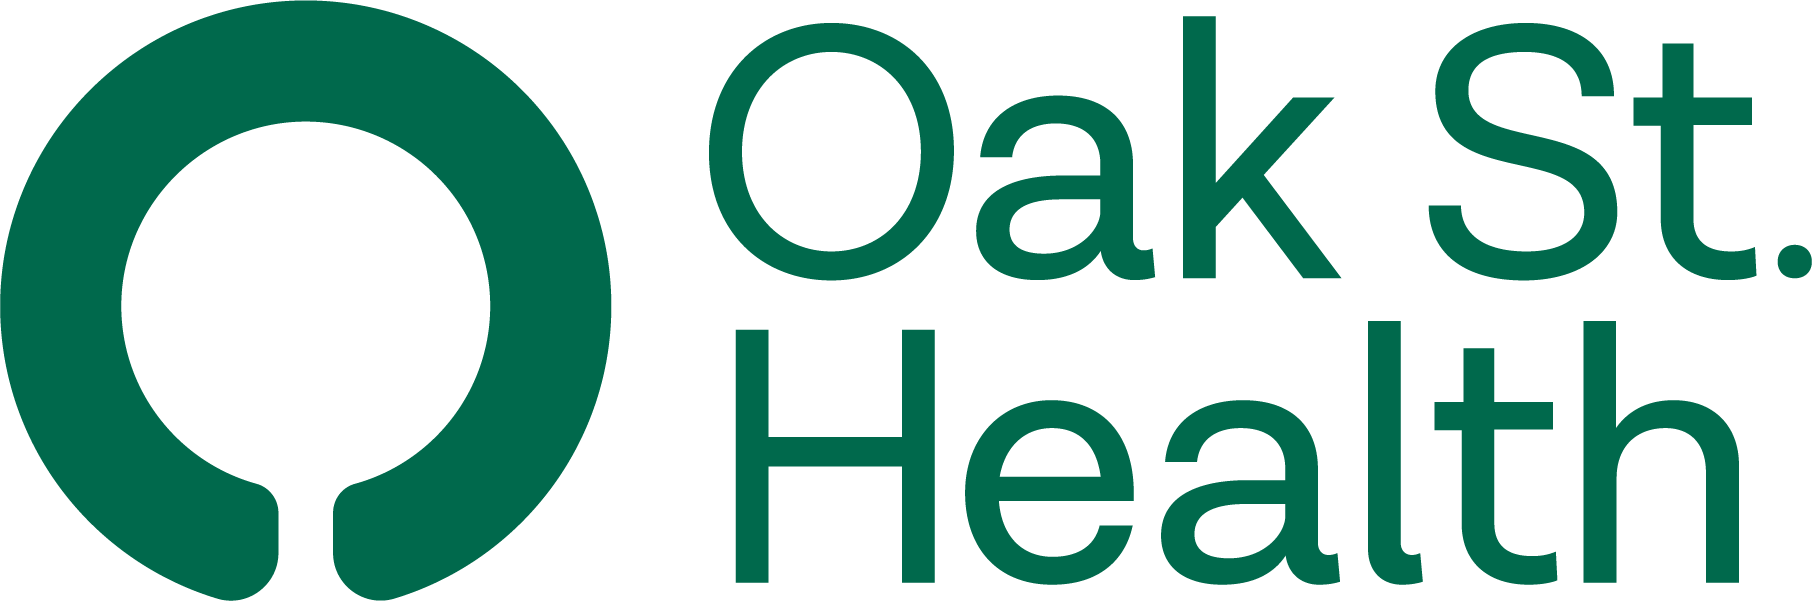 Oak Street Logo